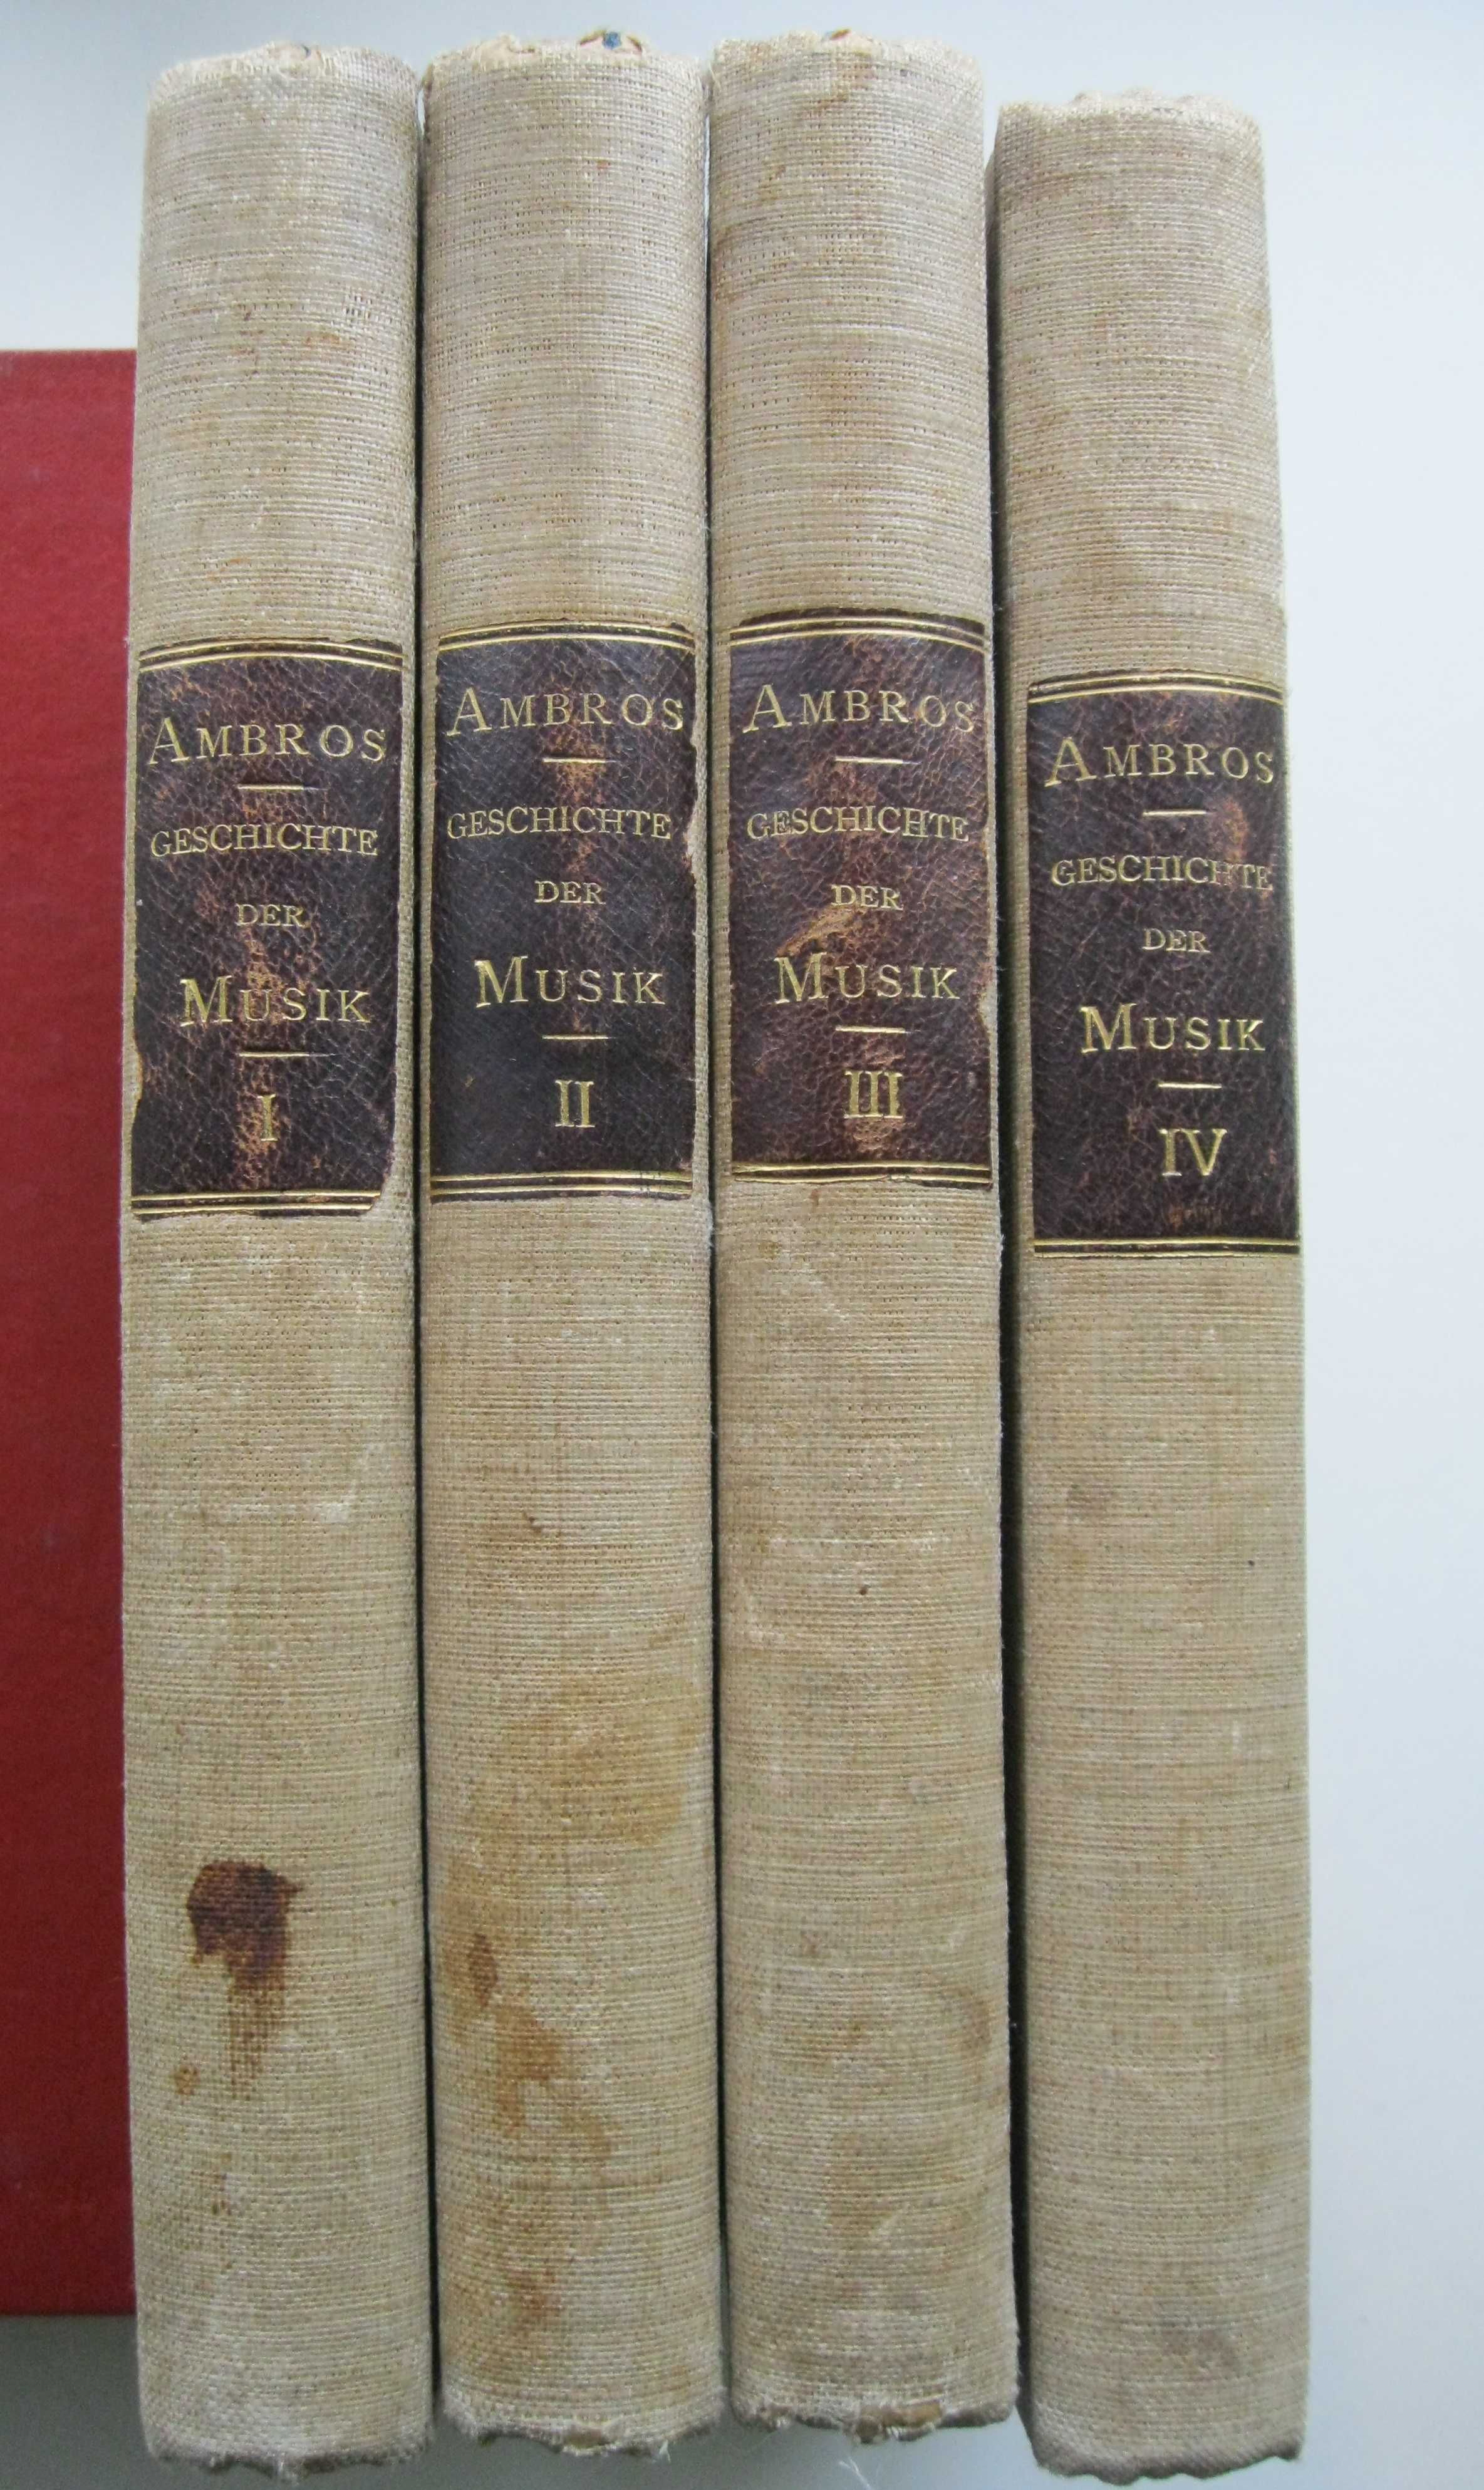 A.W.Ambros Geschichte der musik 1-4т.1880-1881г.(история музыки)